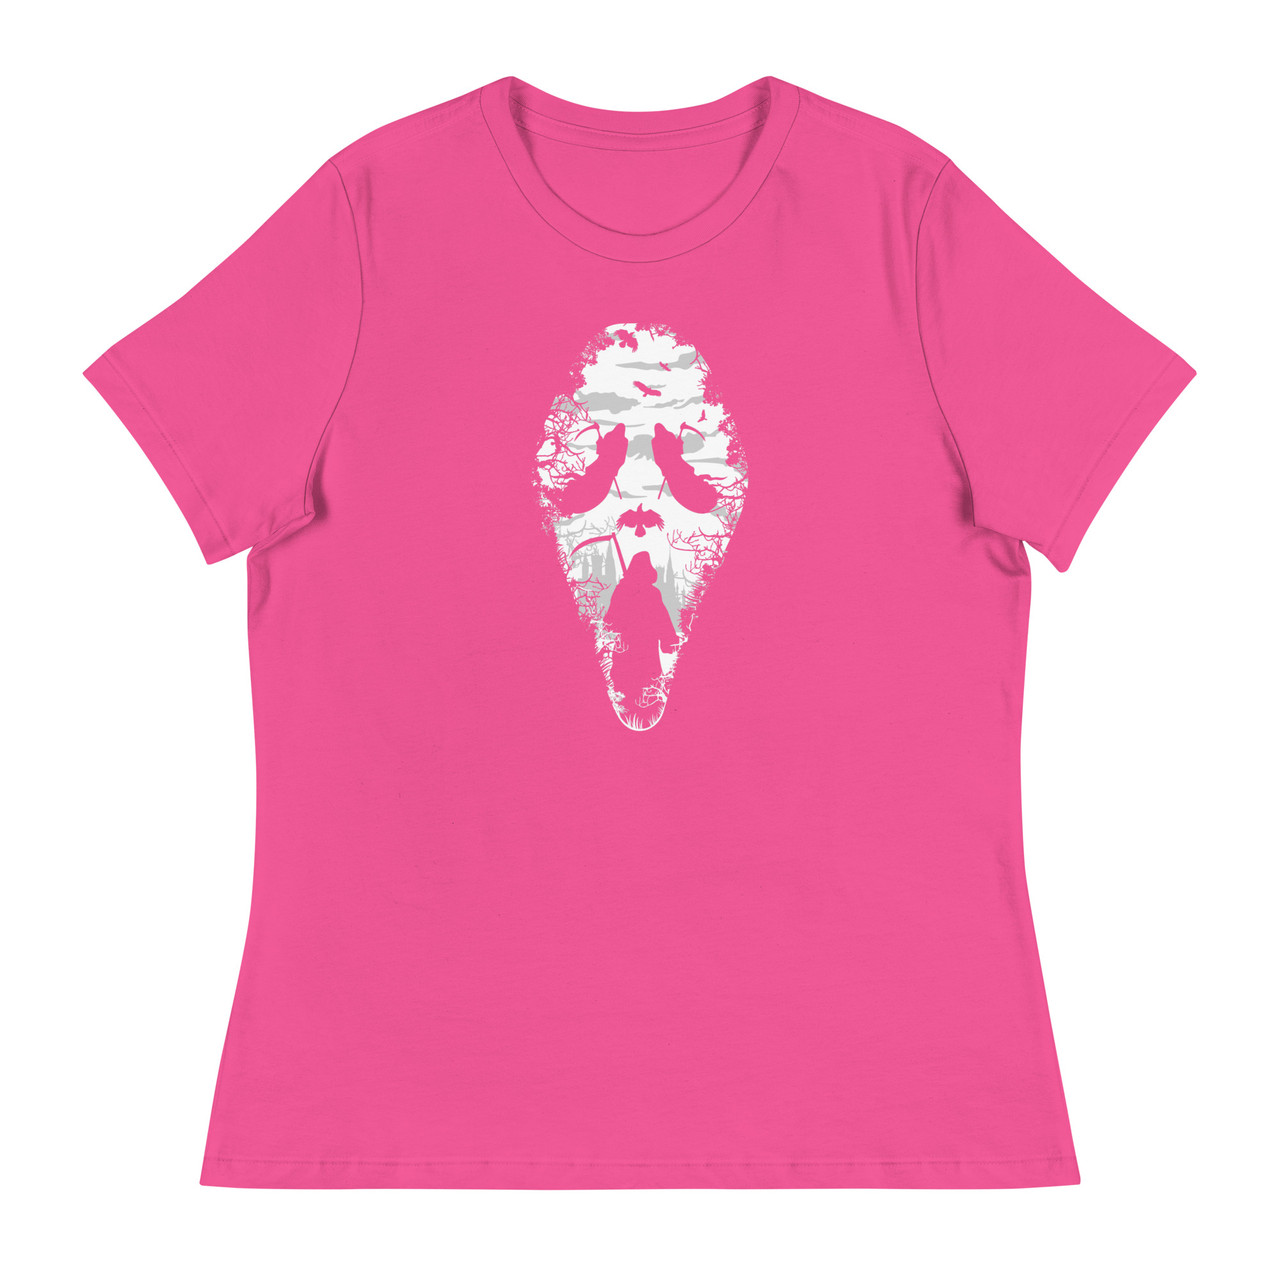 Reaper Scream Women's Relaxed T-Shirt - Bella + Canvas 6400 